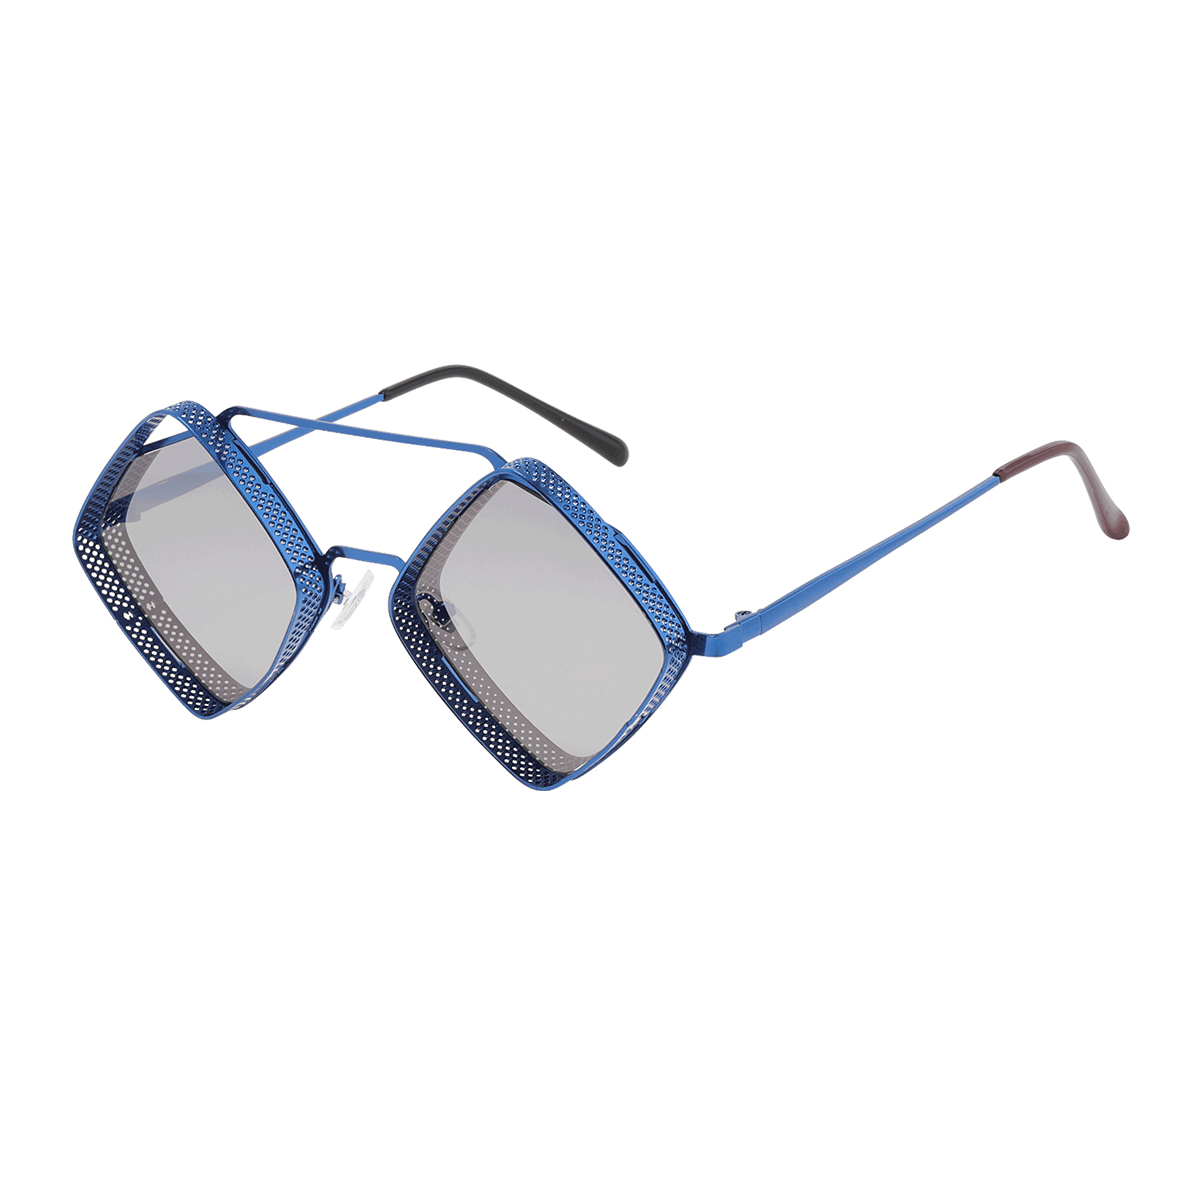 Bonny - Geometric Blue Reading Glasses for Men & Women